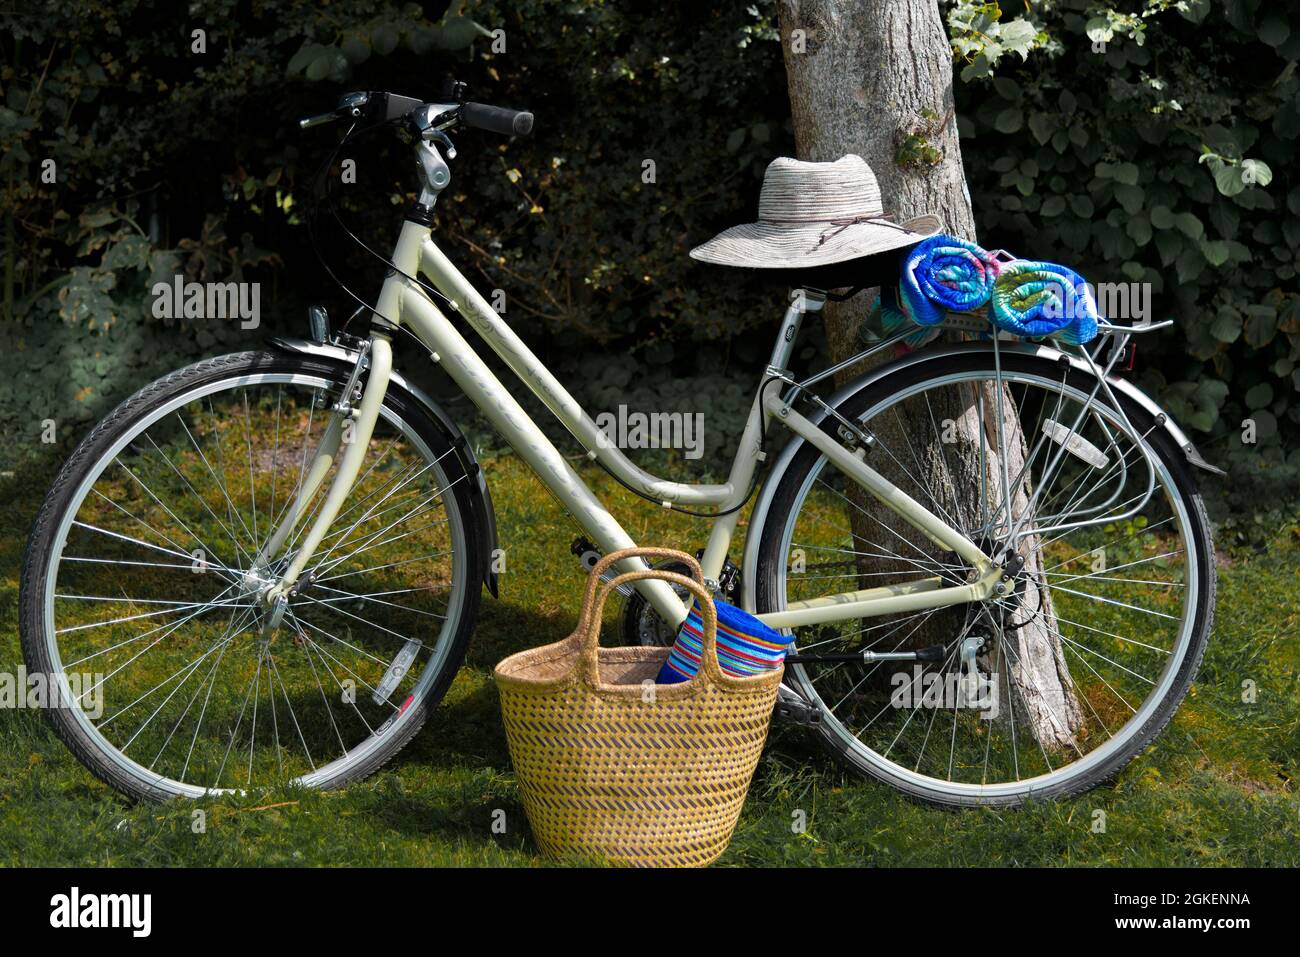 Bicicletas de estilo tradicional crema para mujeres con toallas y sombrero de sol preparado para la playa, West Wittering, Nr.Chichester, West Sussex, Inglaterra Foto de stock